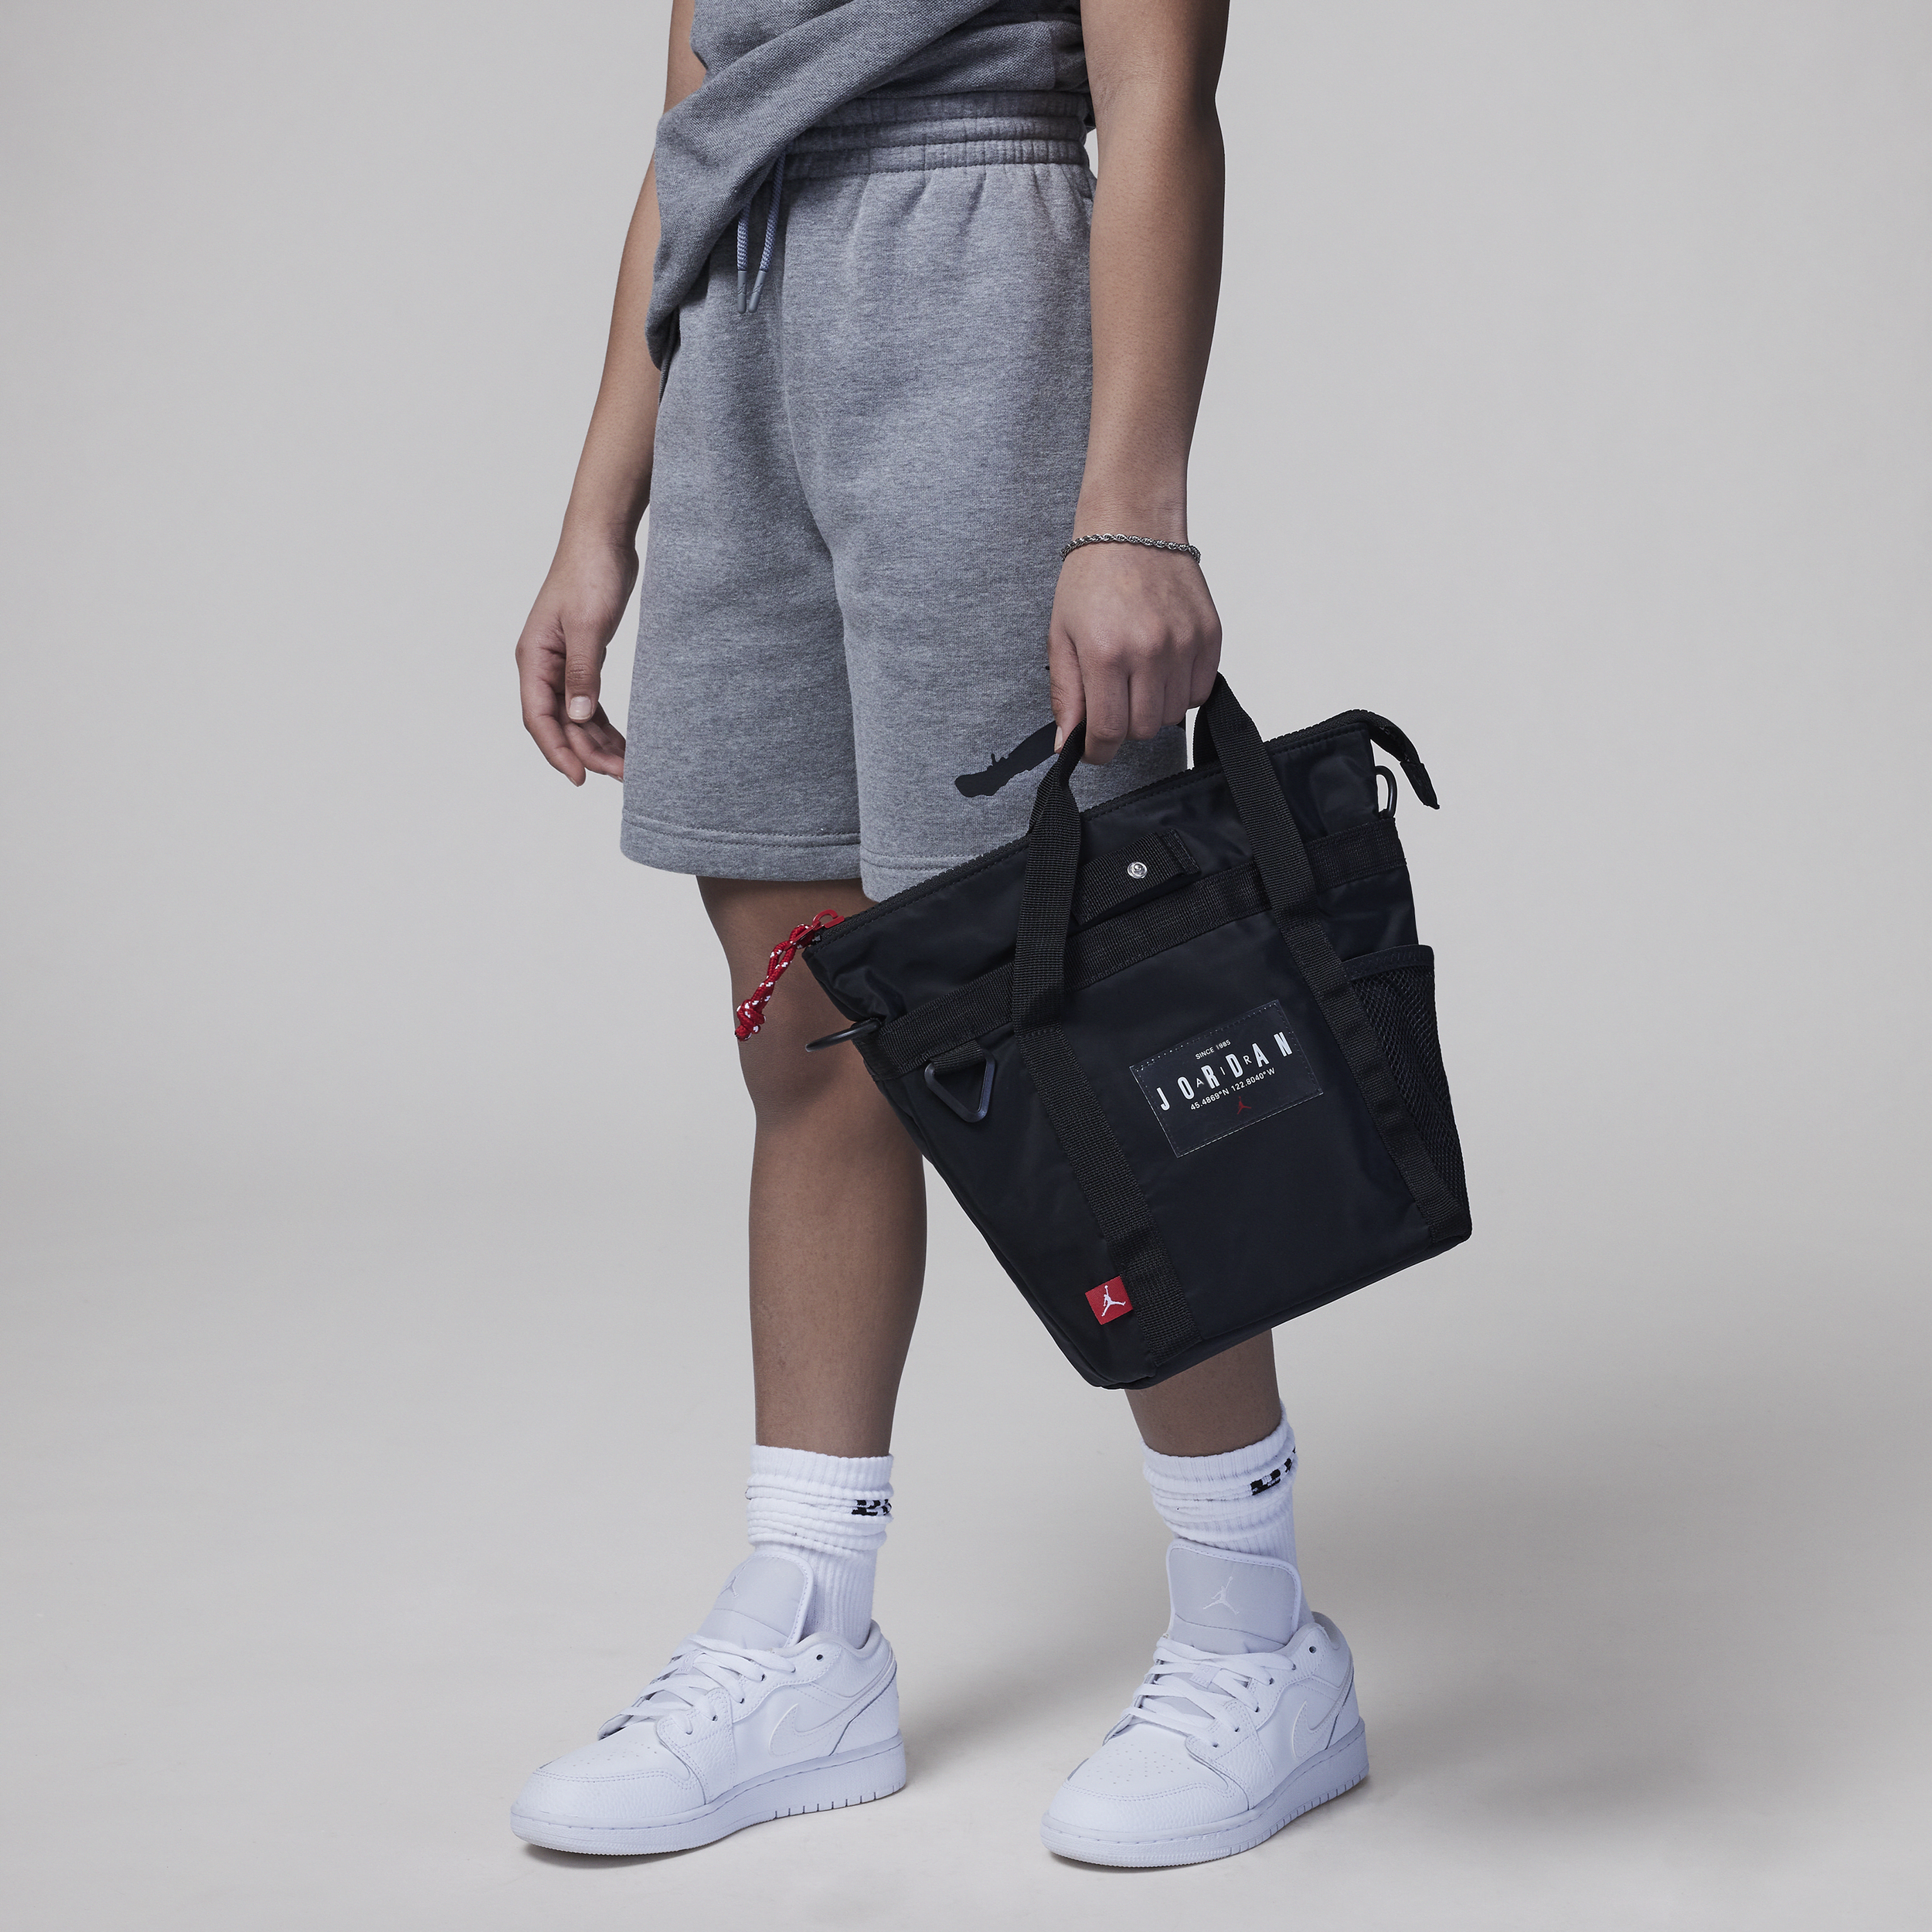 Air Jordan Mini Tote draagtas voor kids (7 liter) - Zwart